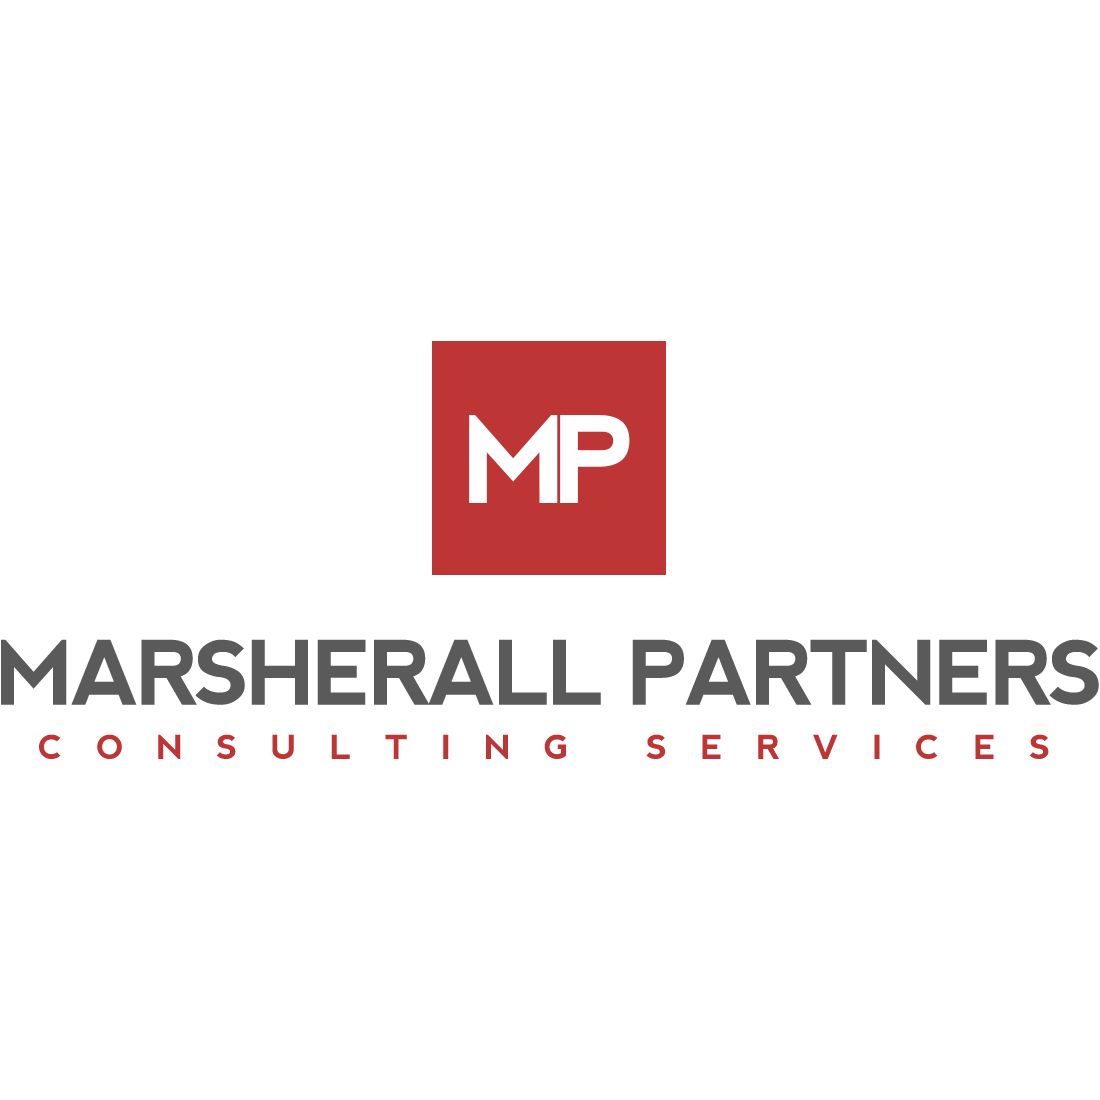 Marsherall Partners